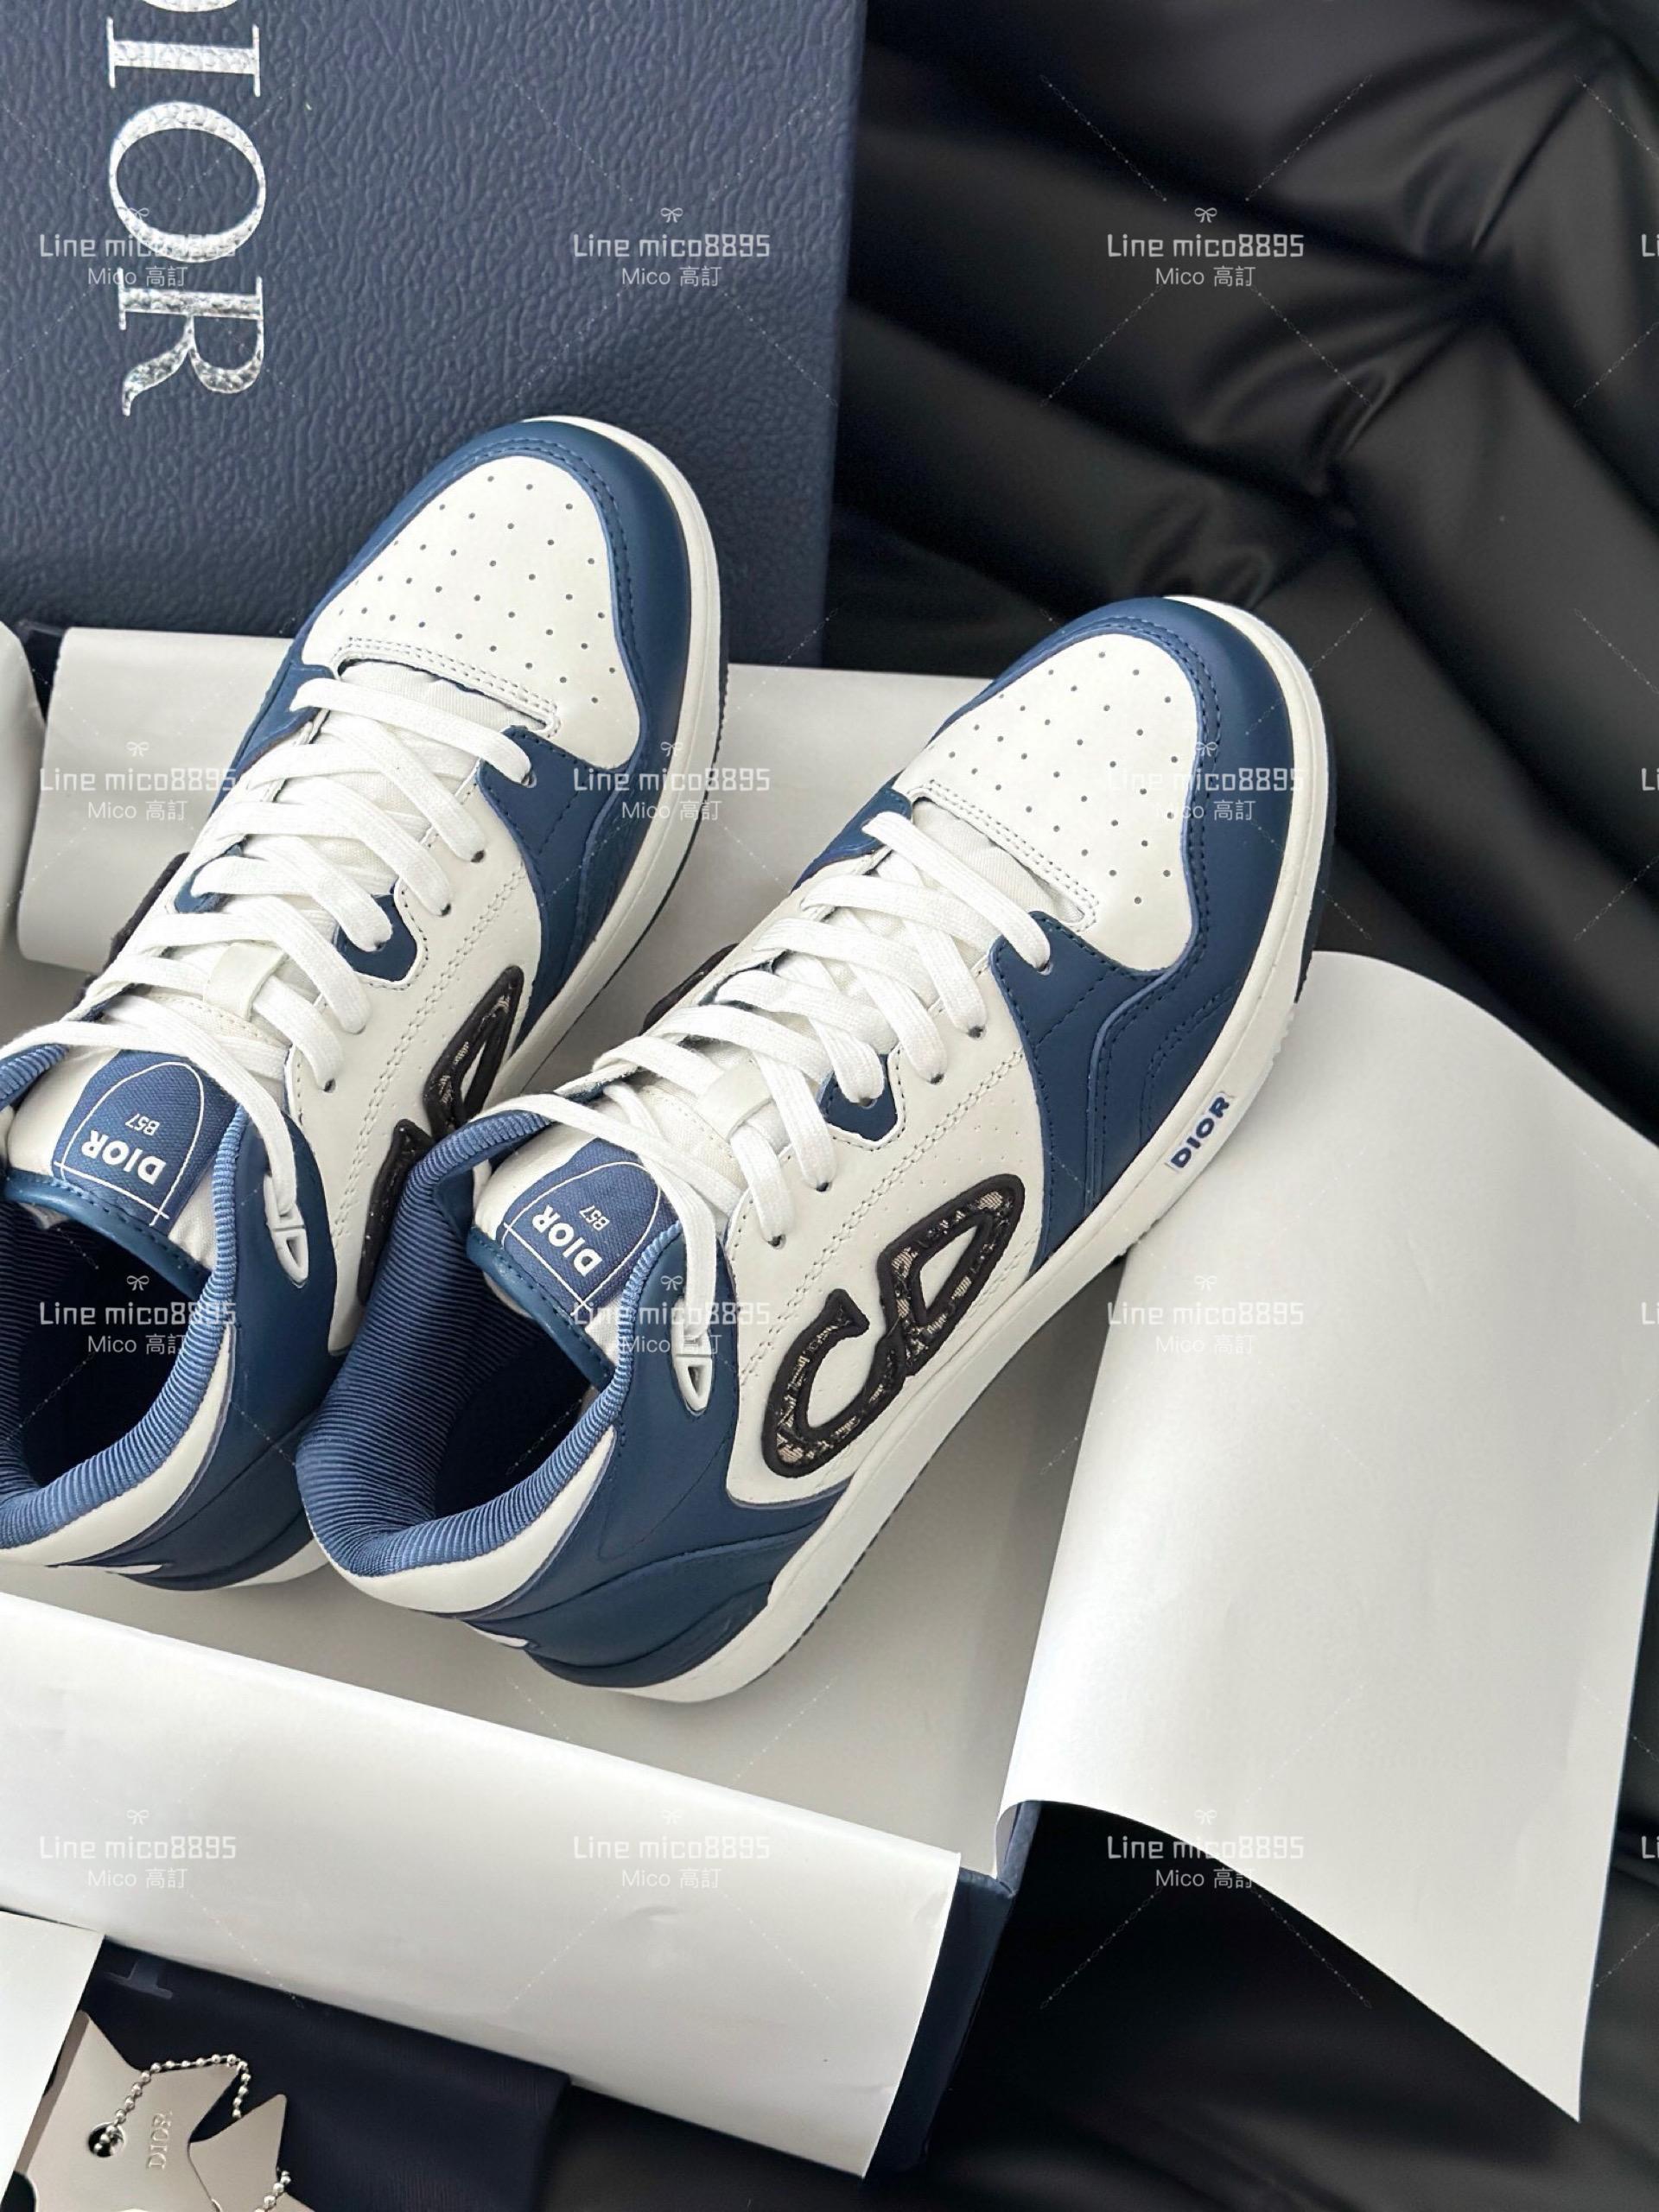 Dior B57系列 深藍x白 情侶款休閒鞋 男鞋/女鞋 女碼35-40 男碼39-45